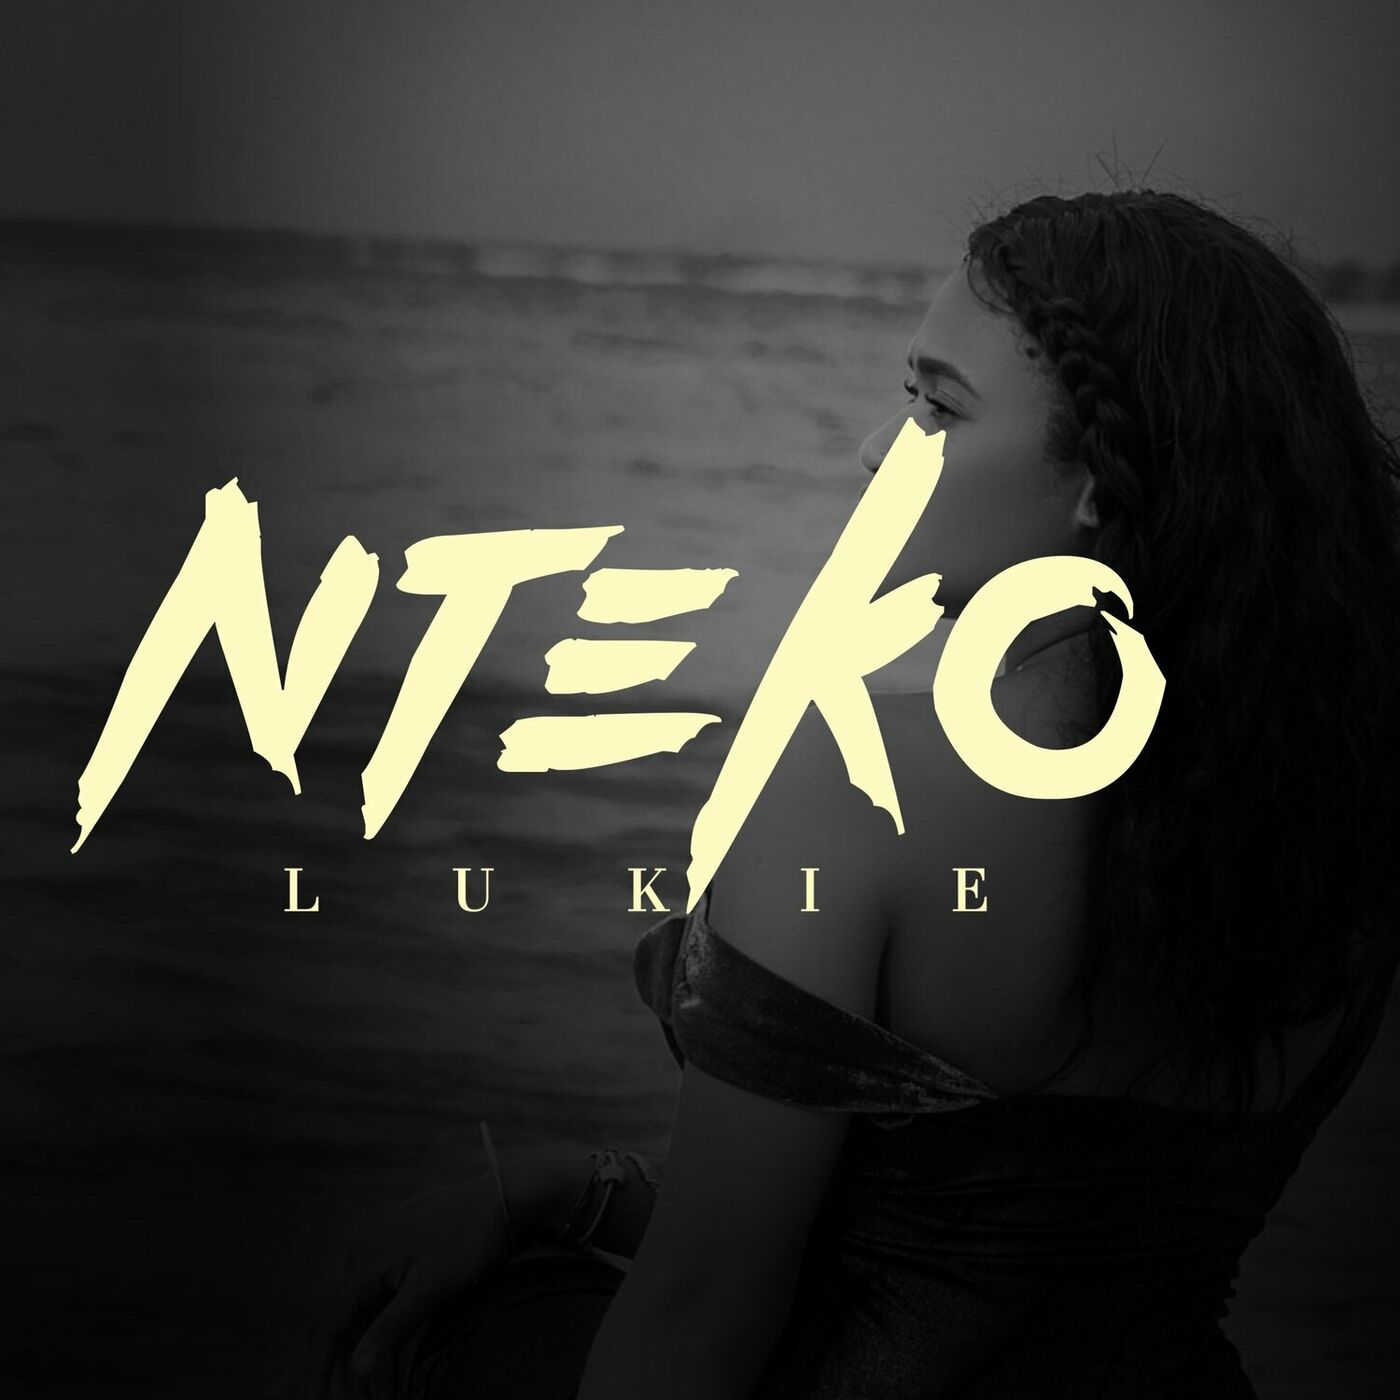 Lukie – Nteko (EP)